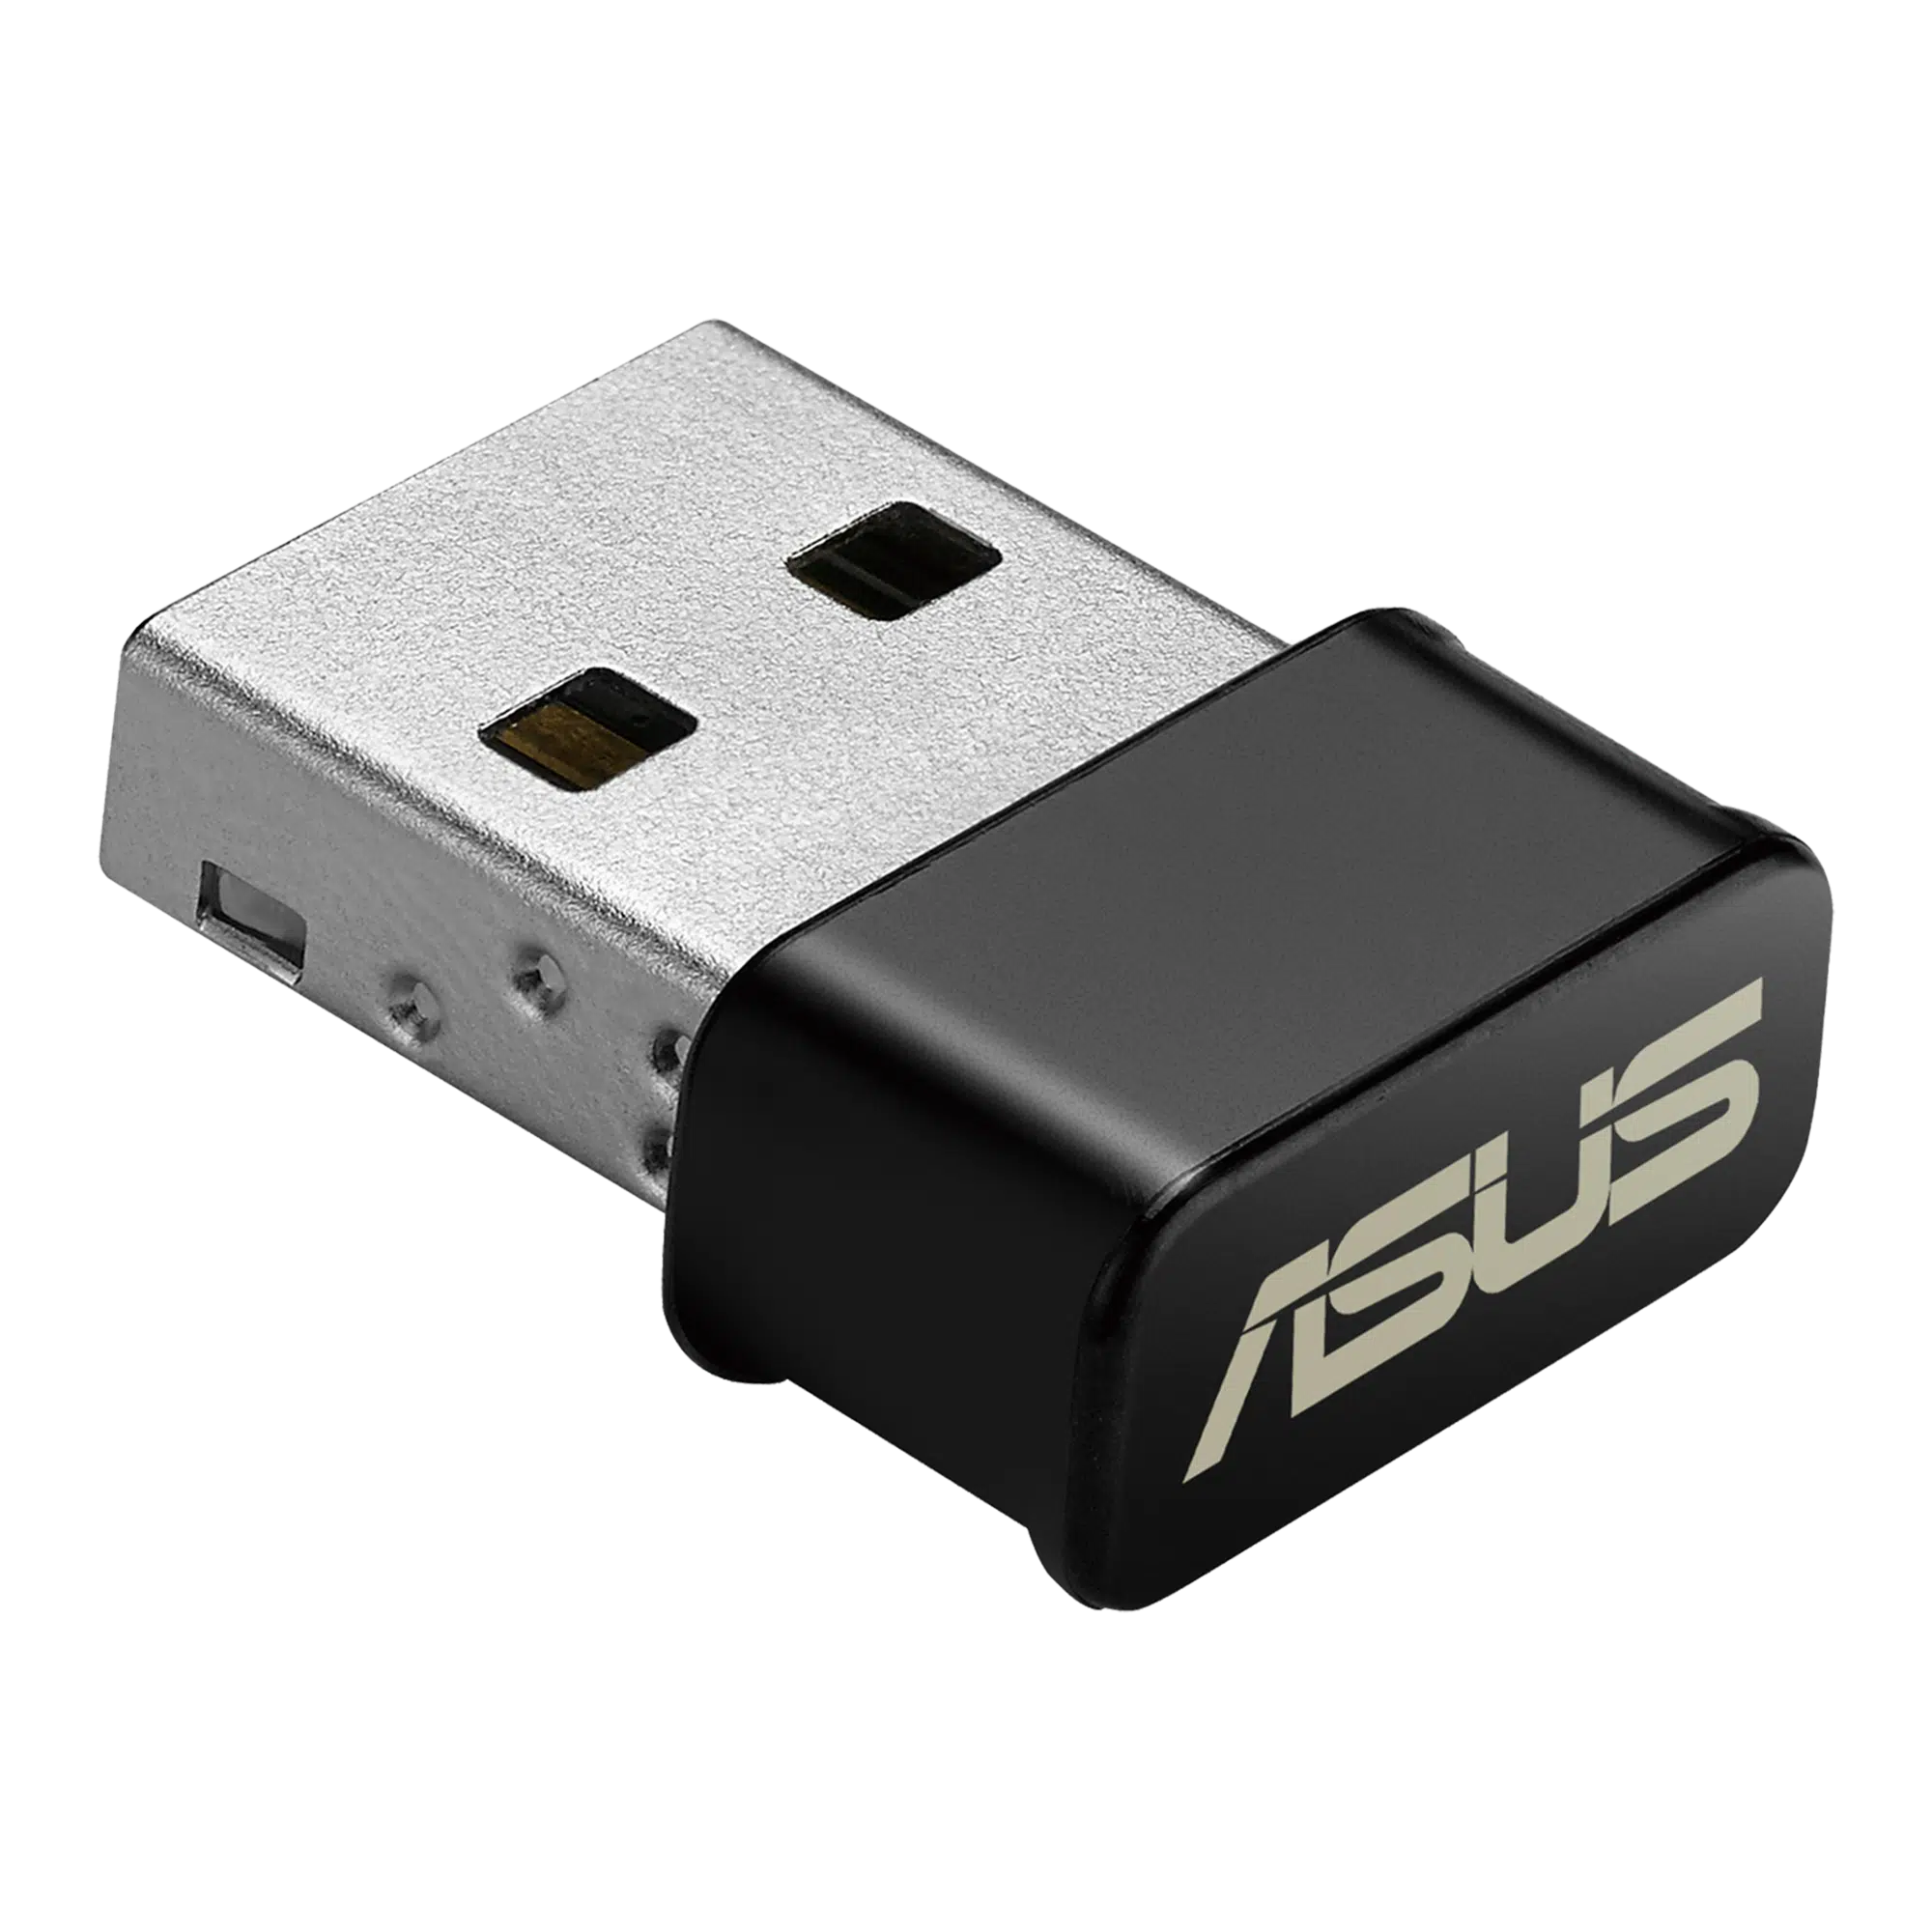 ASUS USB AC53 Nano Driver Windows 32-bit/64-bit